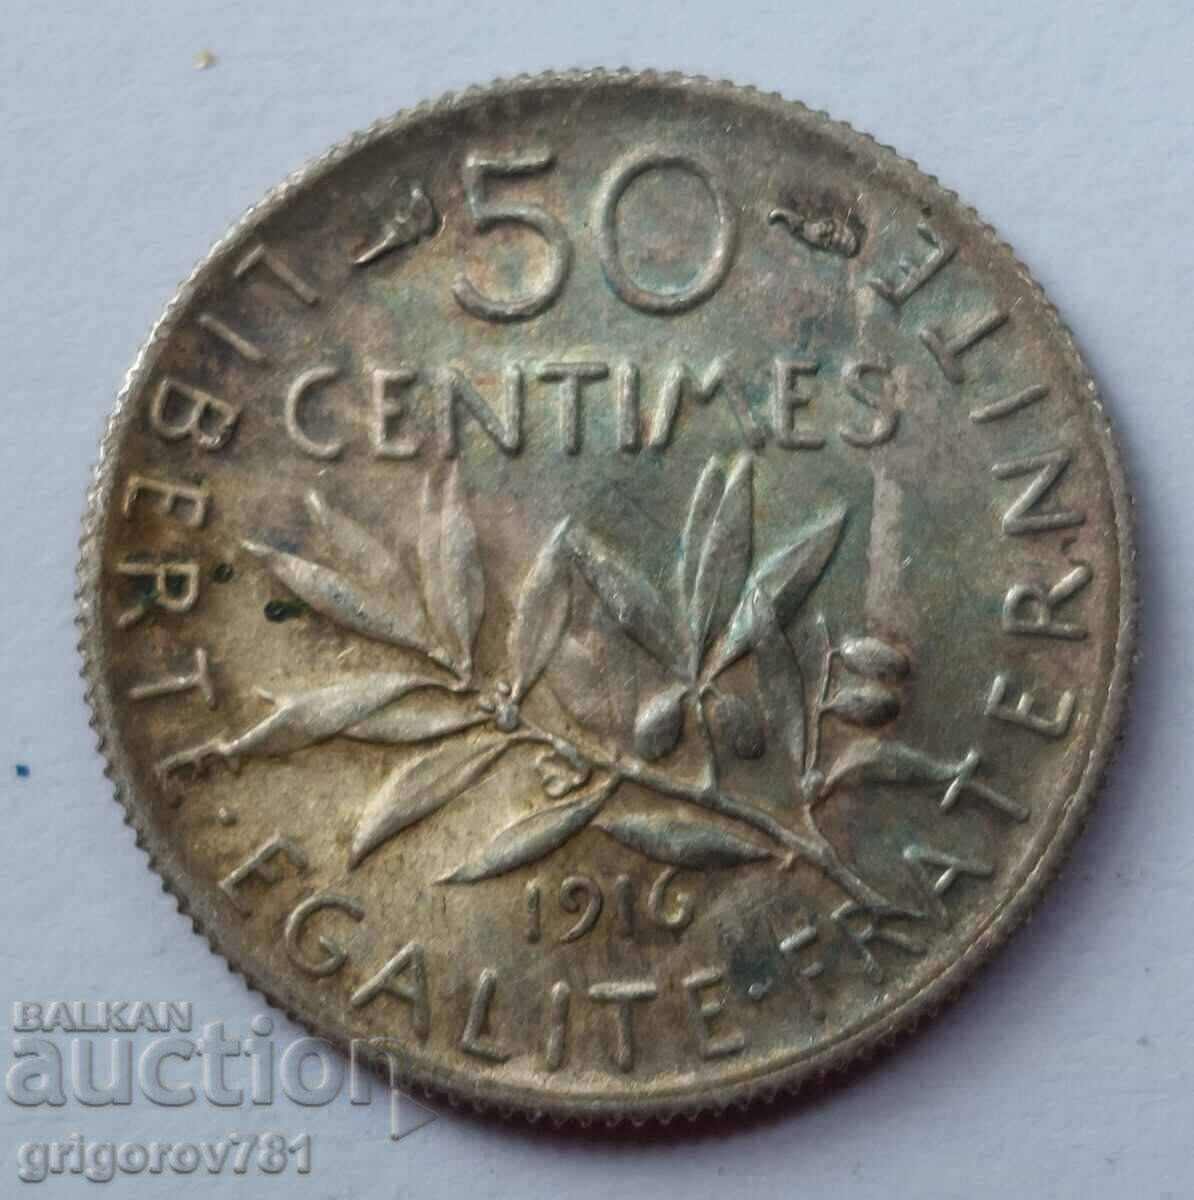 Ασημένιο 50 εκατοστά Γαλλία 1916 - ασημένιο νόμισμα №56